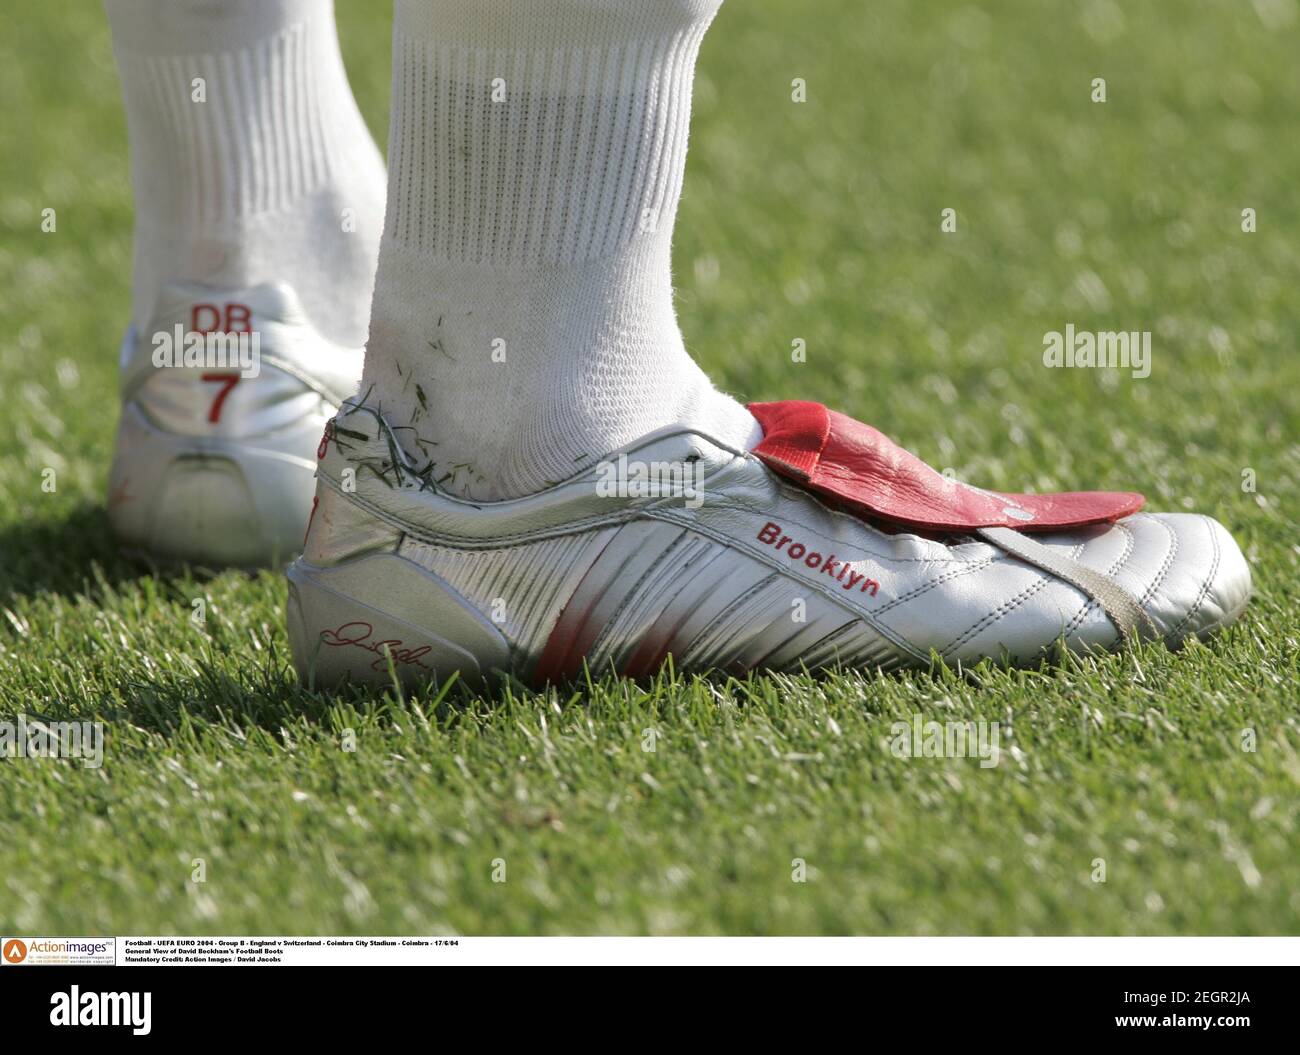 Adidas Football Boots Fotos E Imagenes De Stock Pagina 5 Alamy